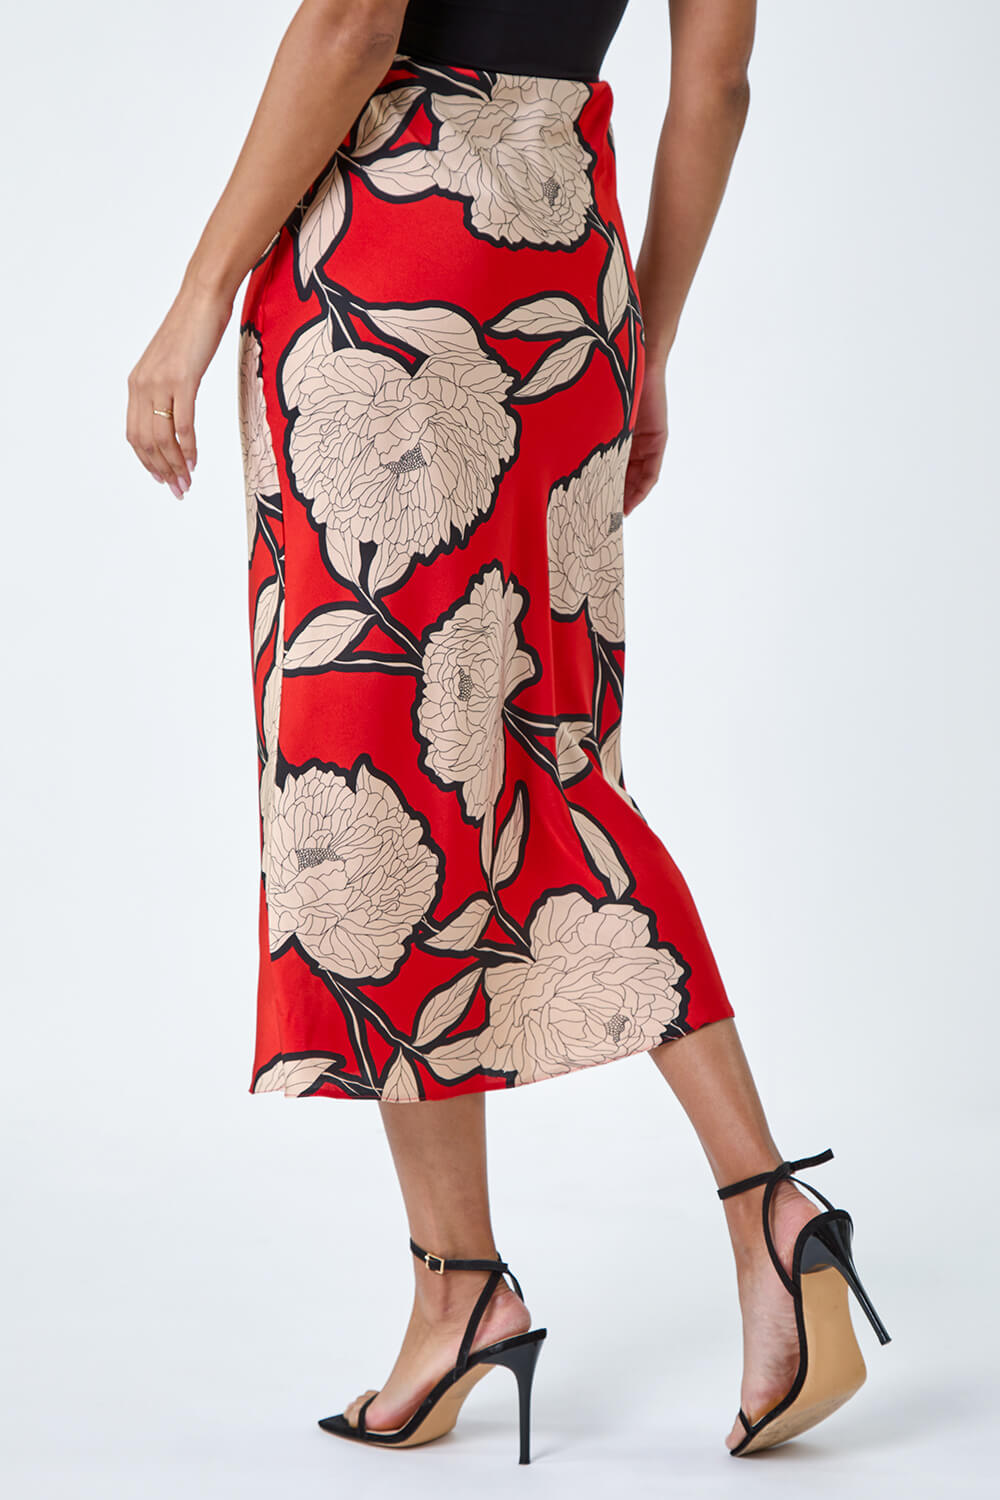 ORANGE Floral Satin Bias Cut Midi Skirt, Image 3 of 5